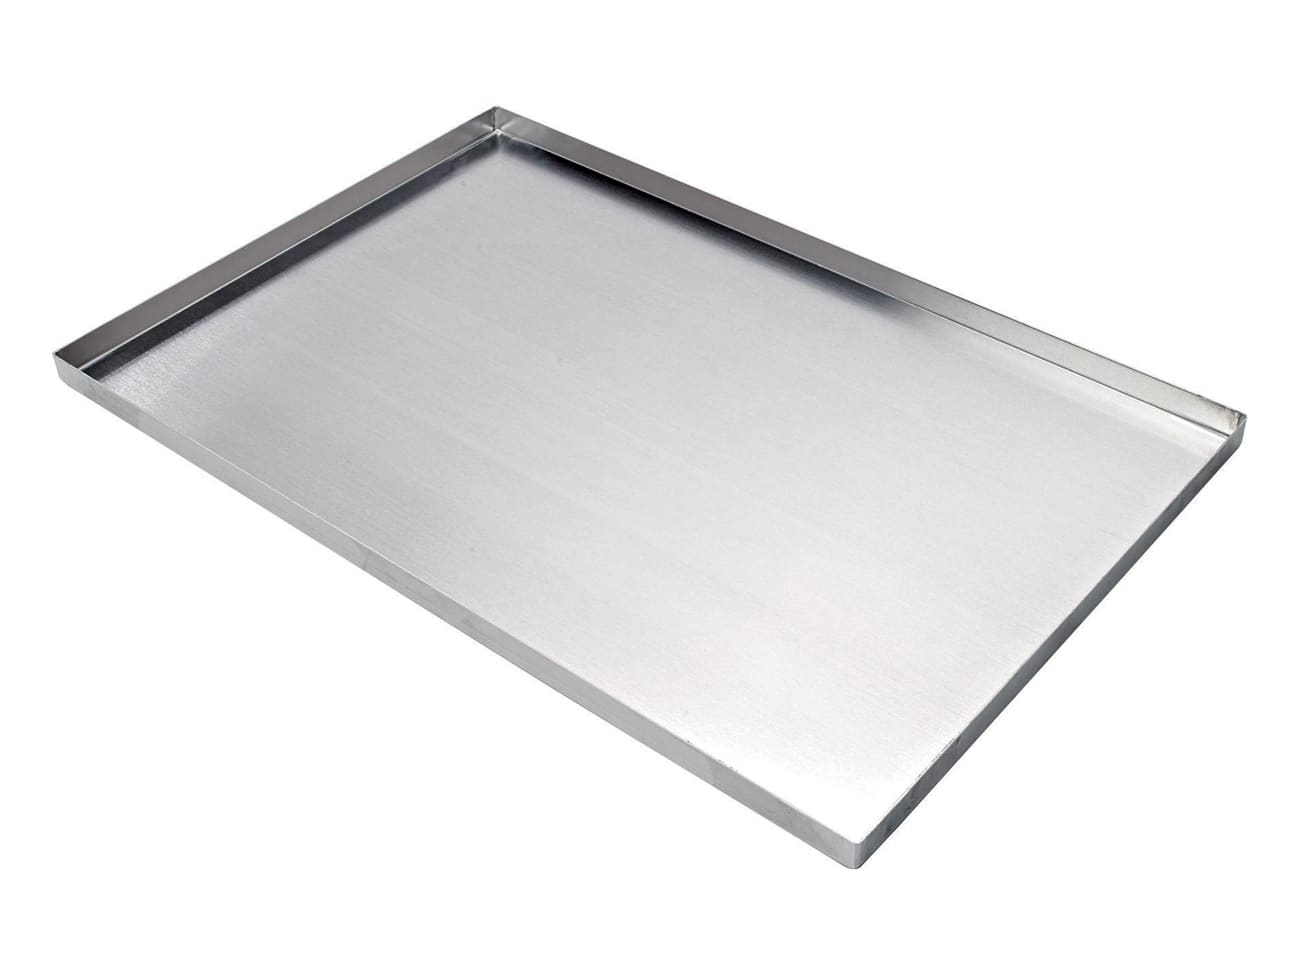 Plaque aluminium avec rebord 40 x 30 cm - Meilleur du Chef